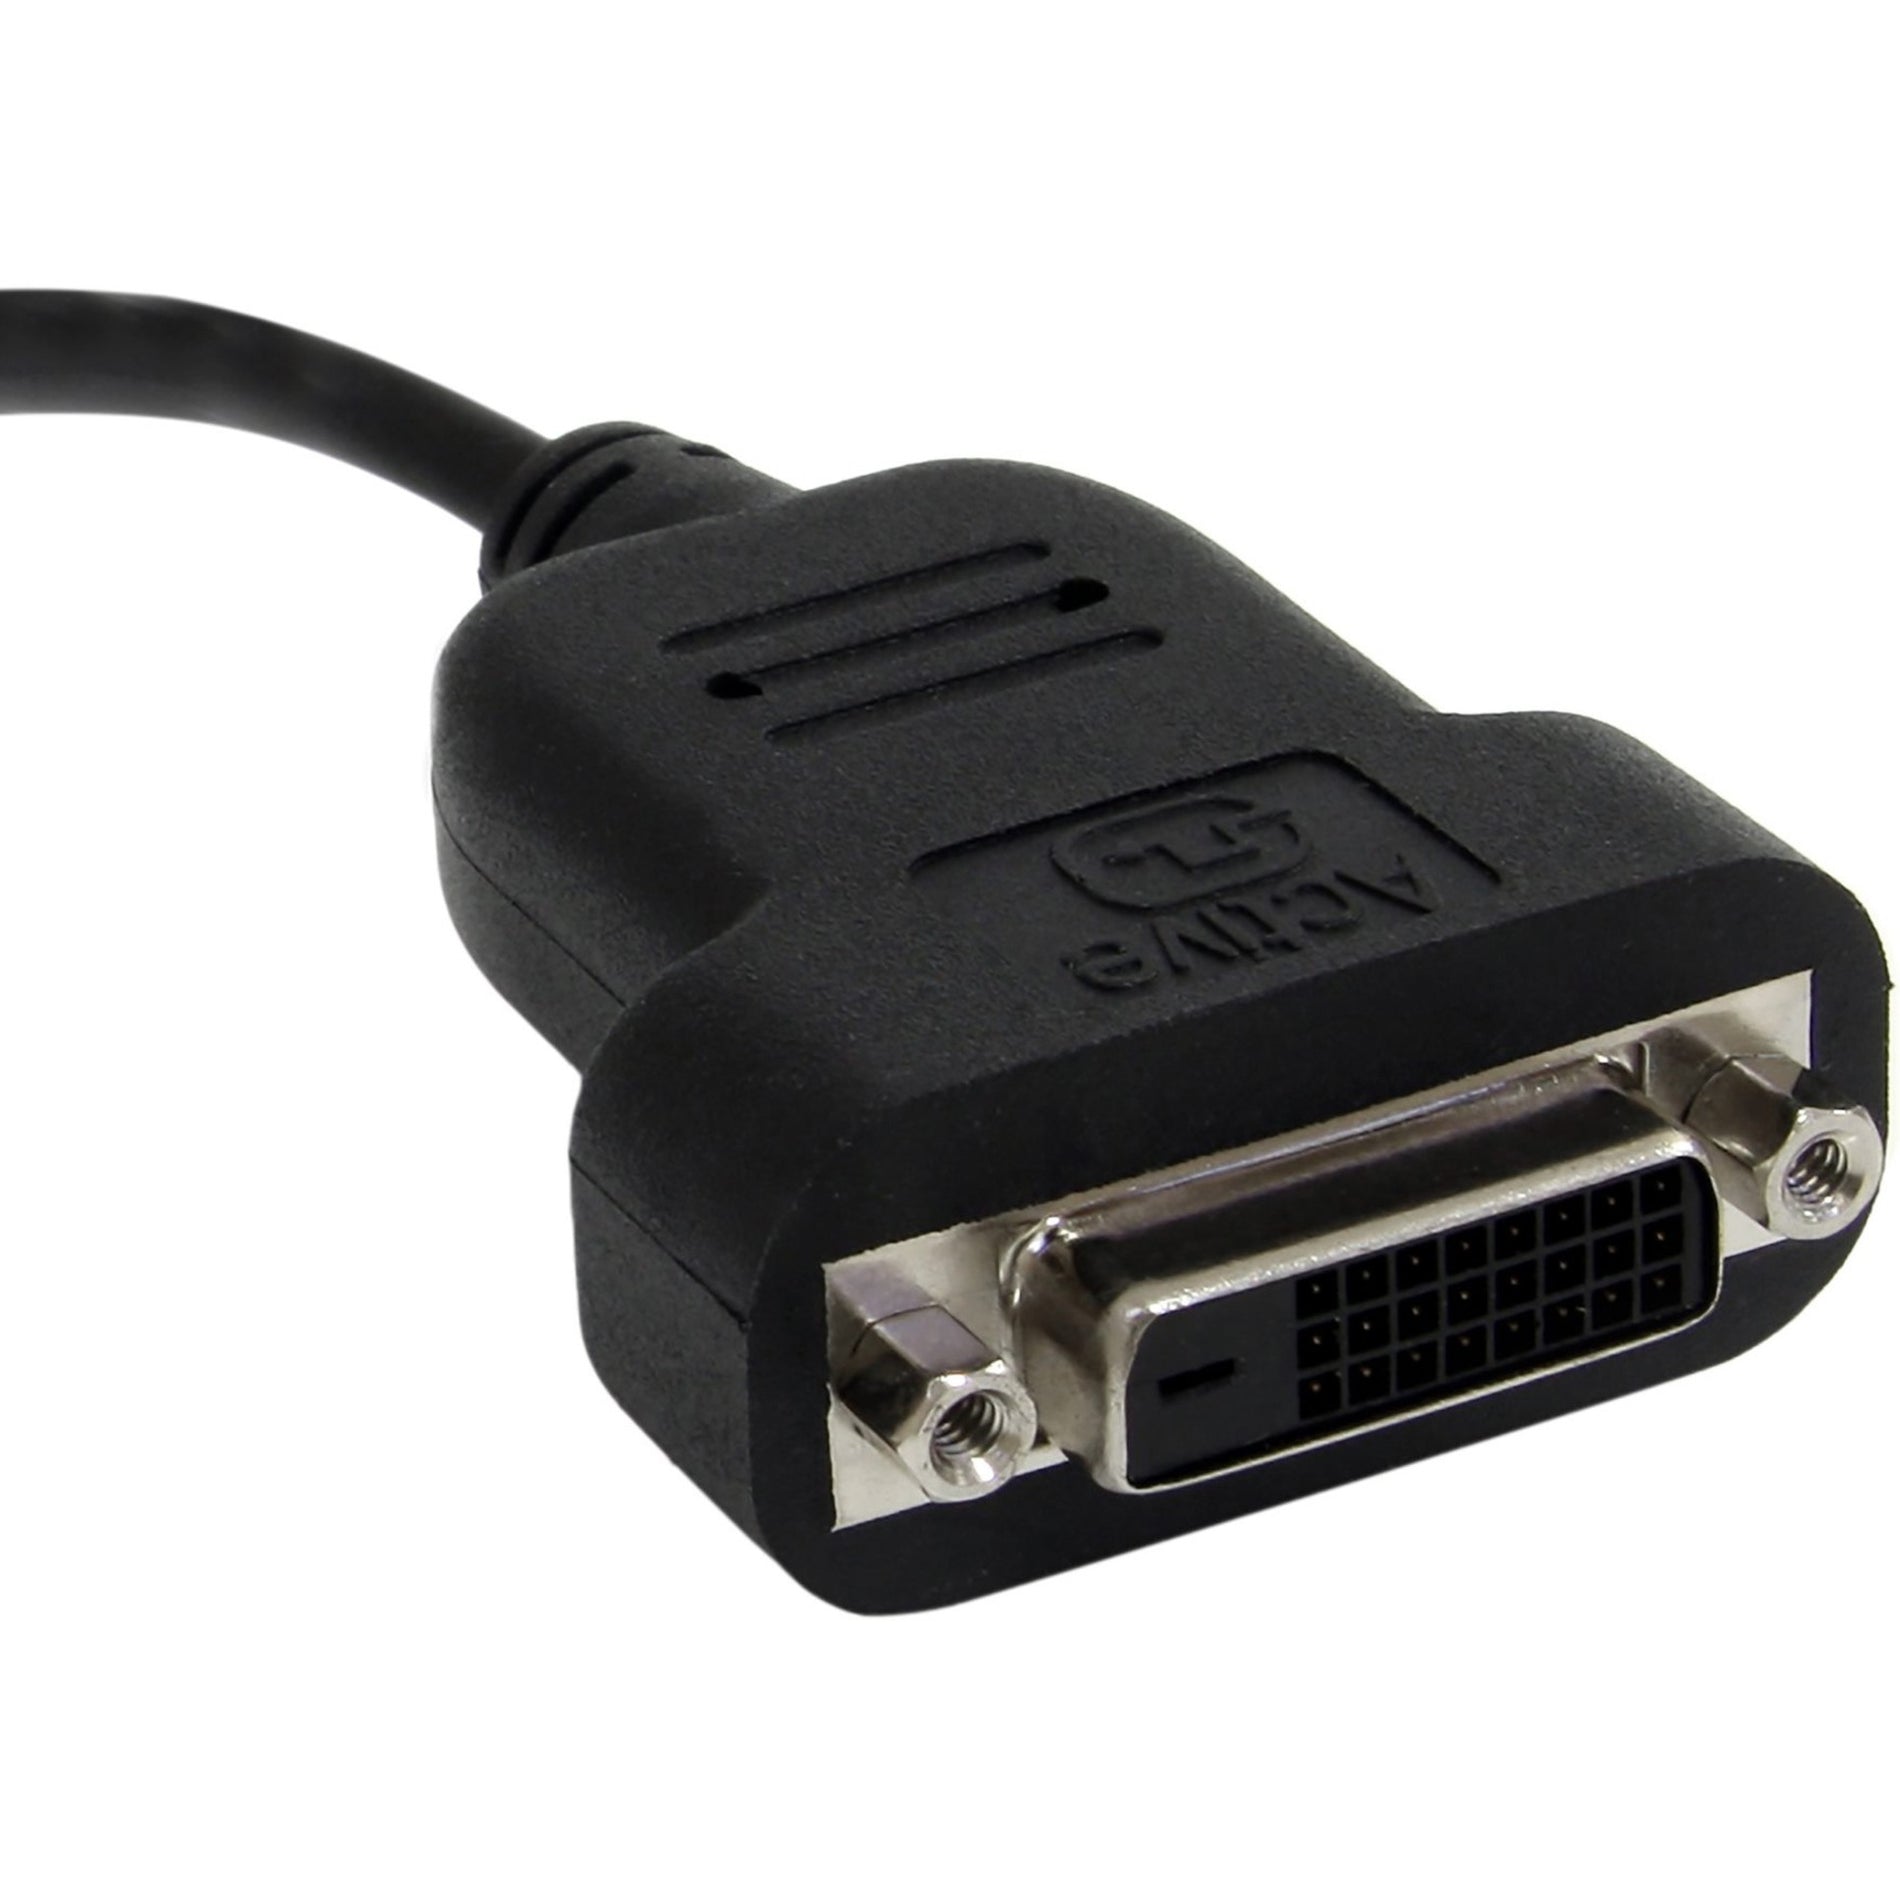 StarTech.com MDP2DVIS Mini DisplayPort to DVI Active Adapter, Video Adapter, HDCP 1.3